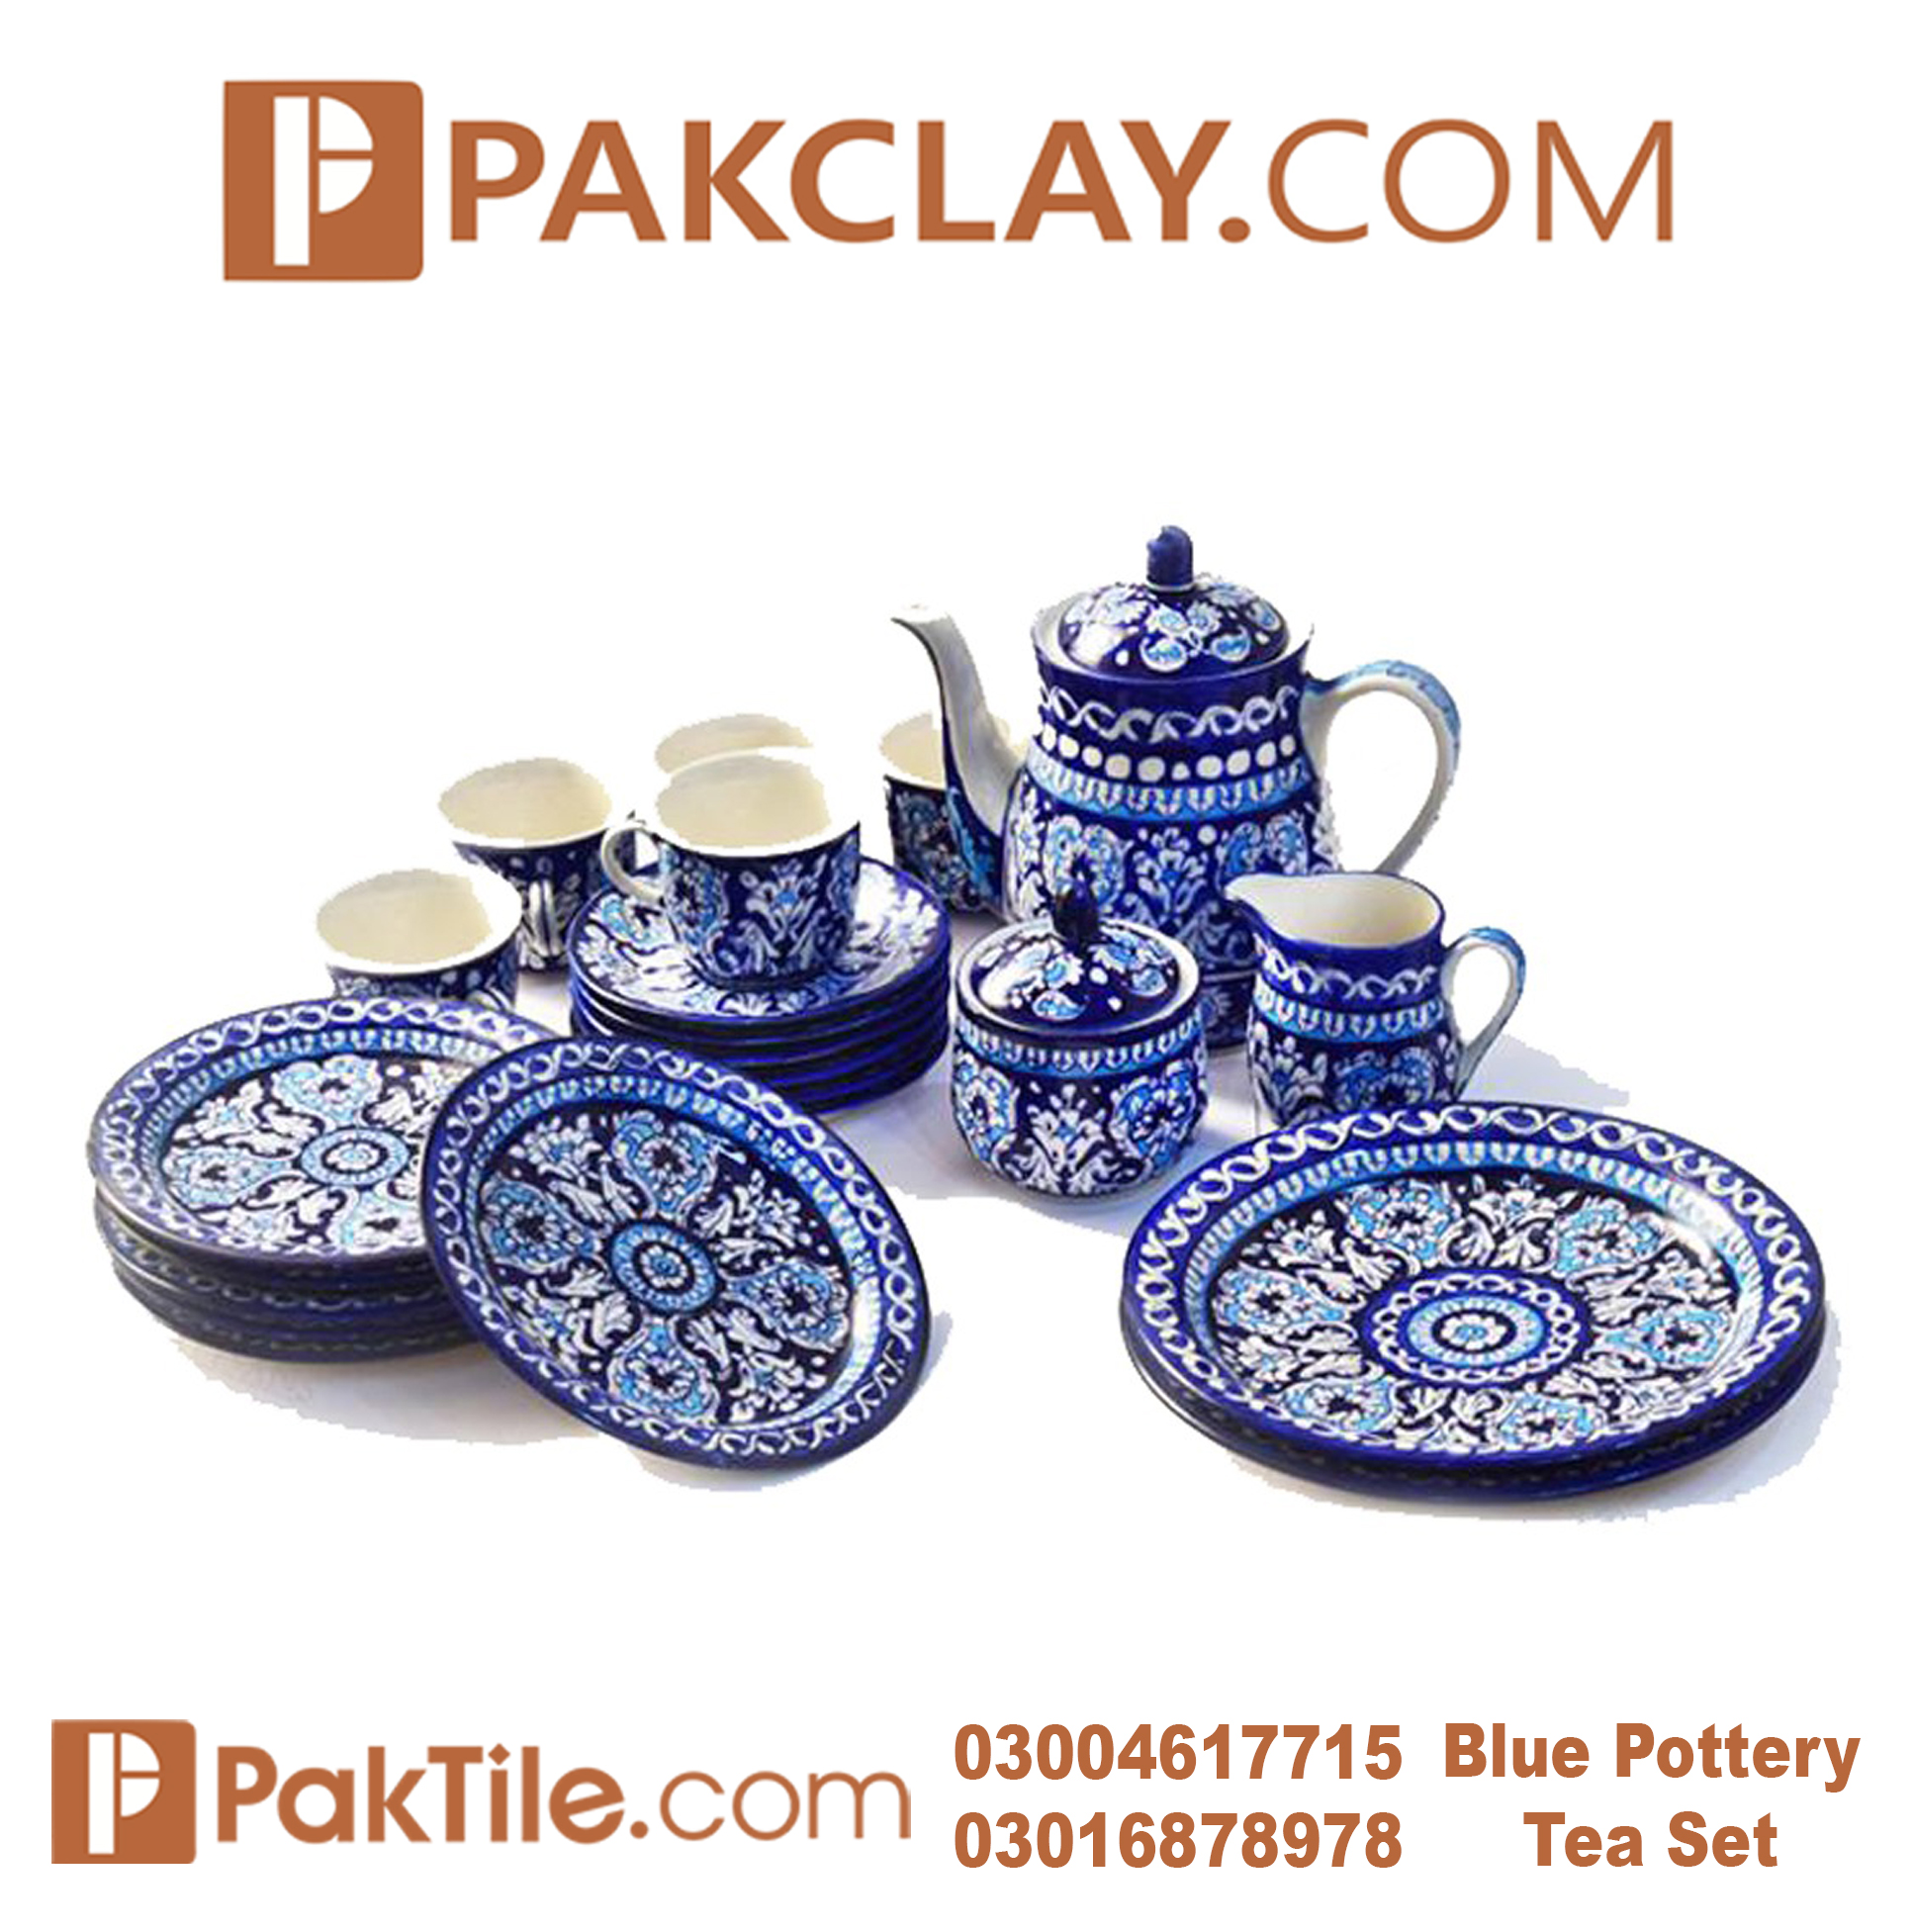 11 Blue Pottery Tiles Price in Karachi.